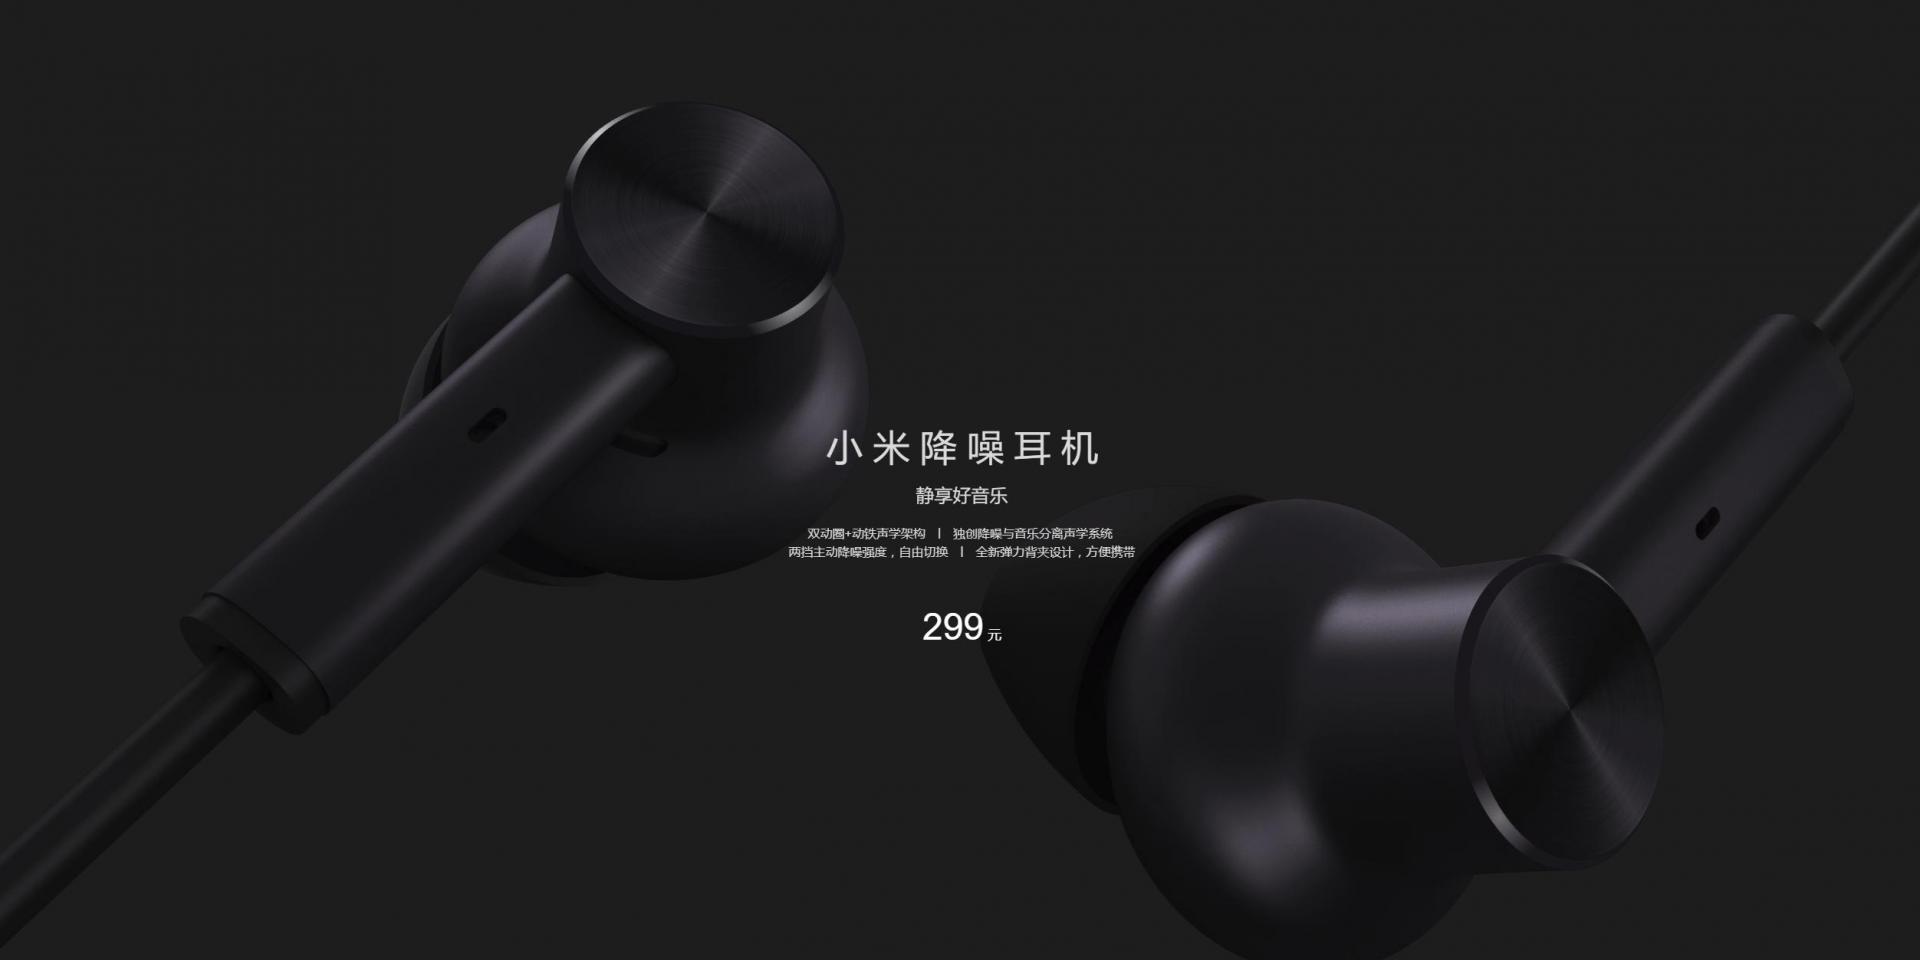 У Xiaomi появились наушники Mi Noise Cancelling с шумоподавлением 